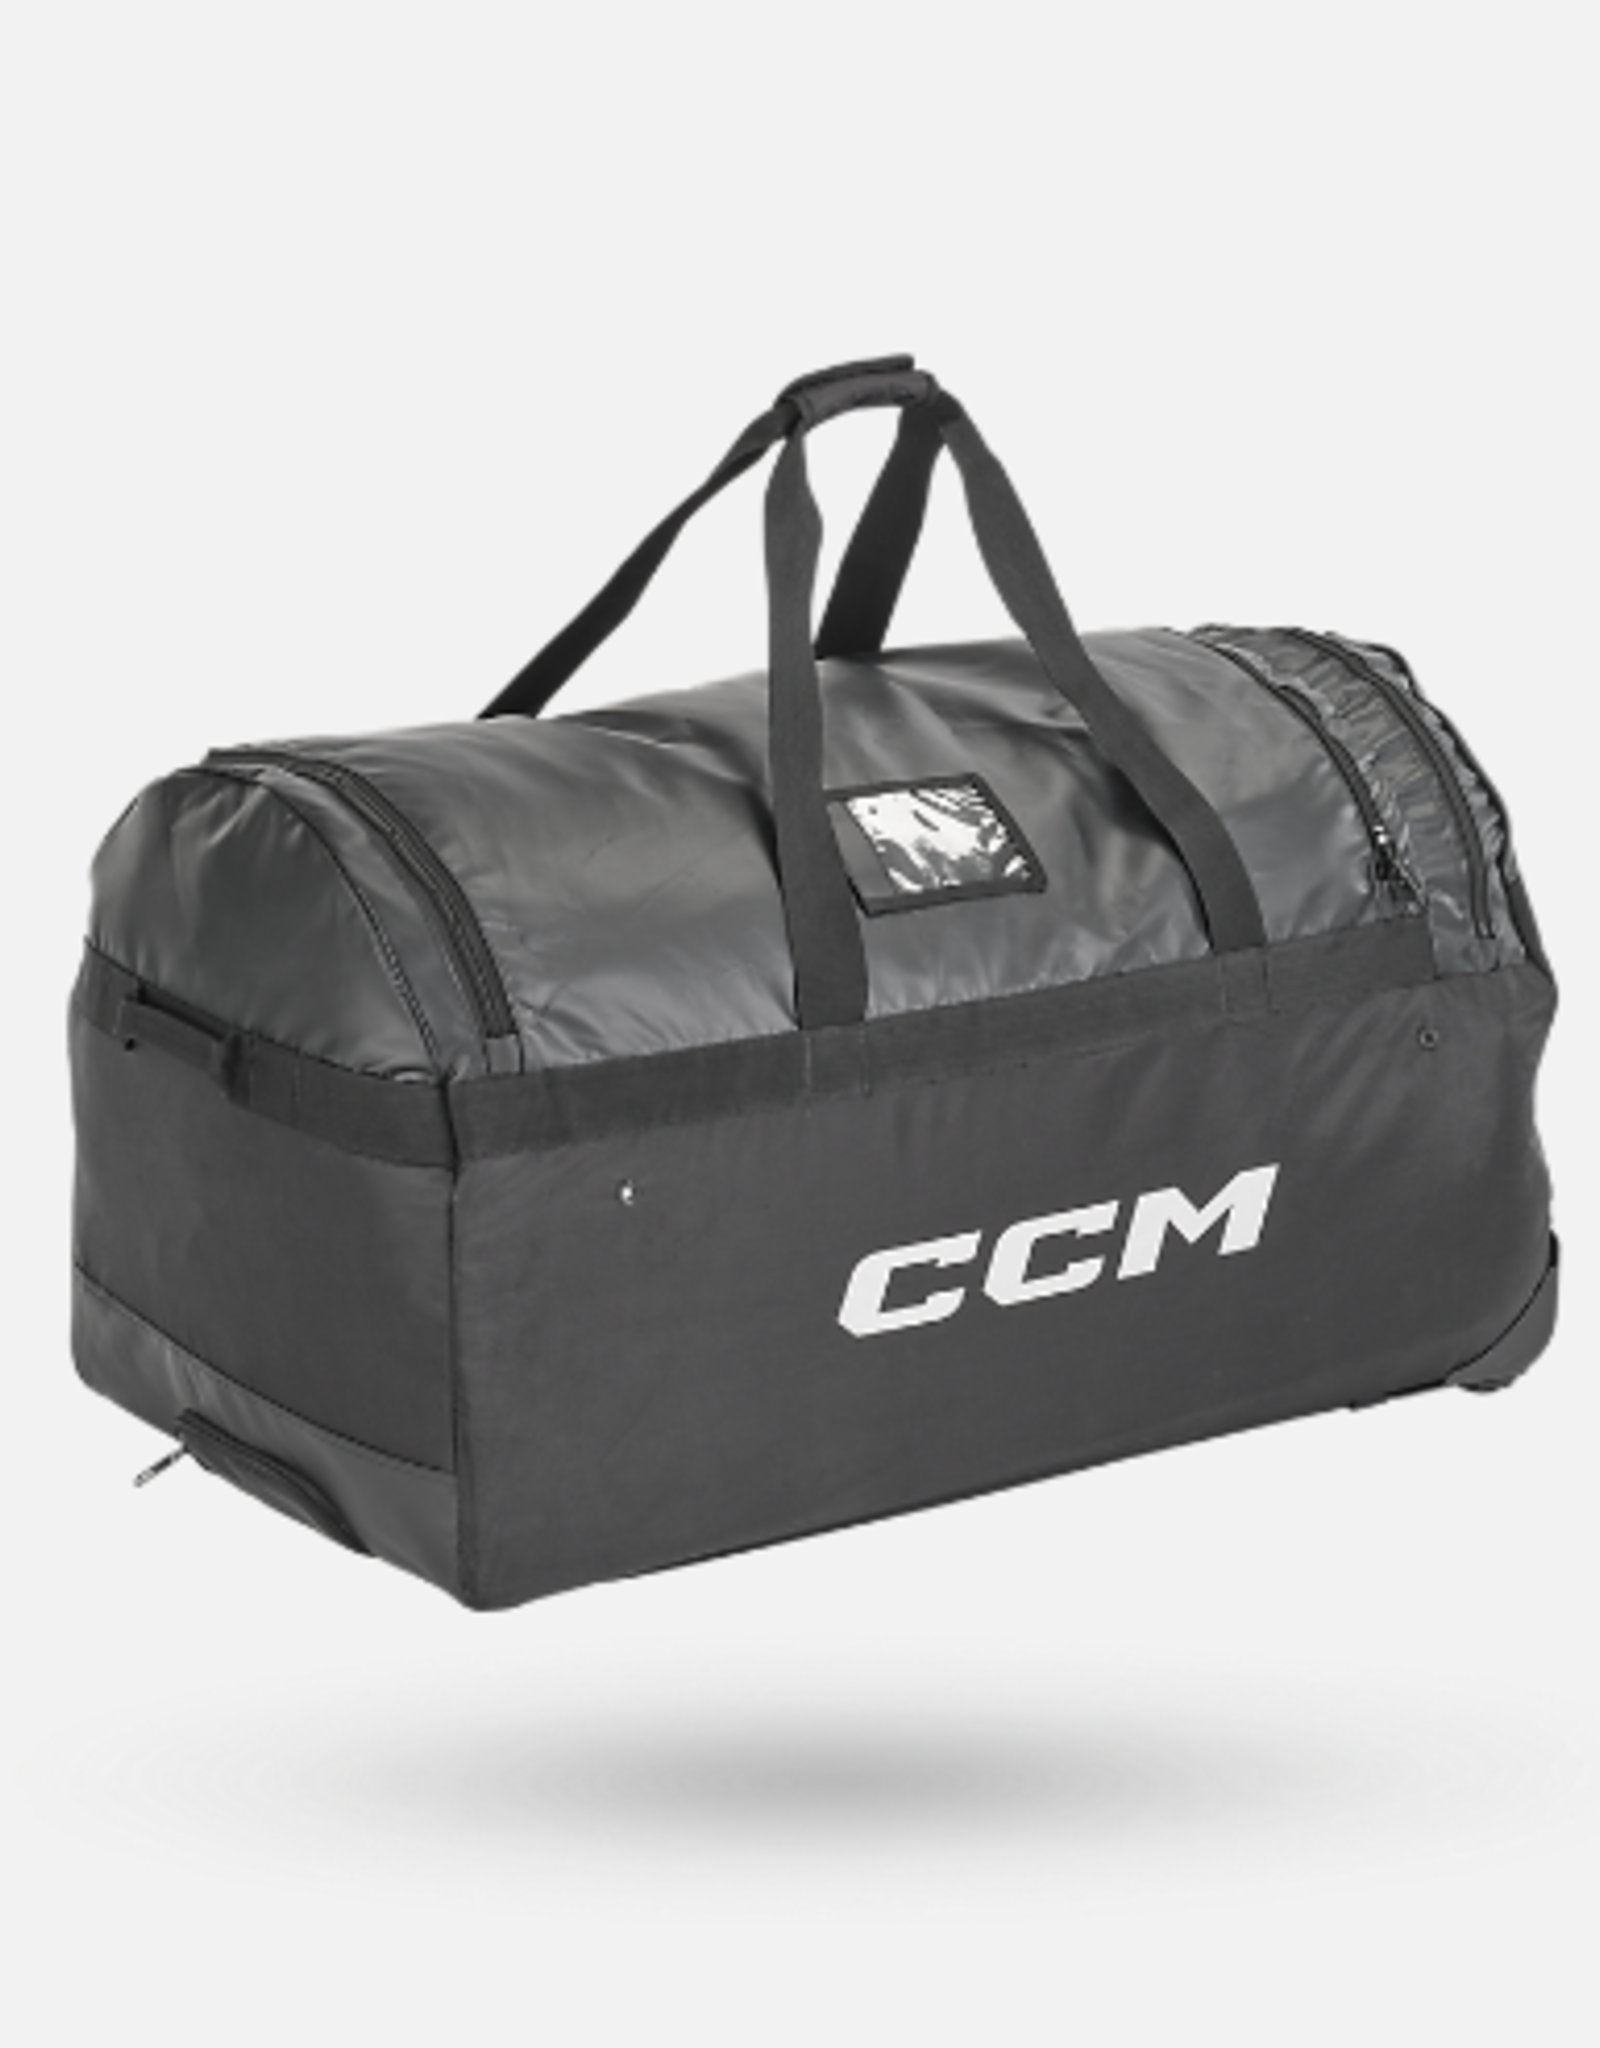 CCM Hockey B480W36 CCM DELUXE 36`` WHEEL BAG